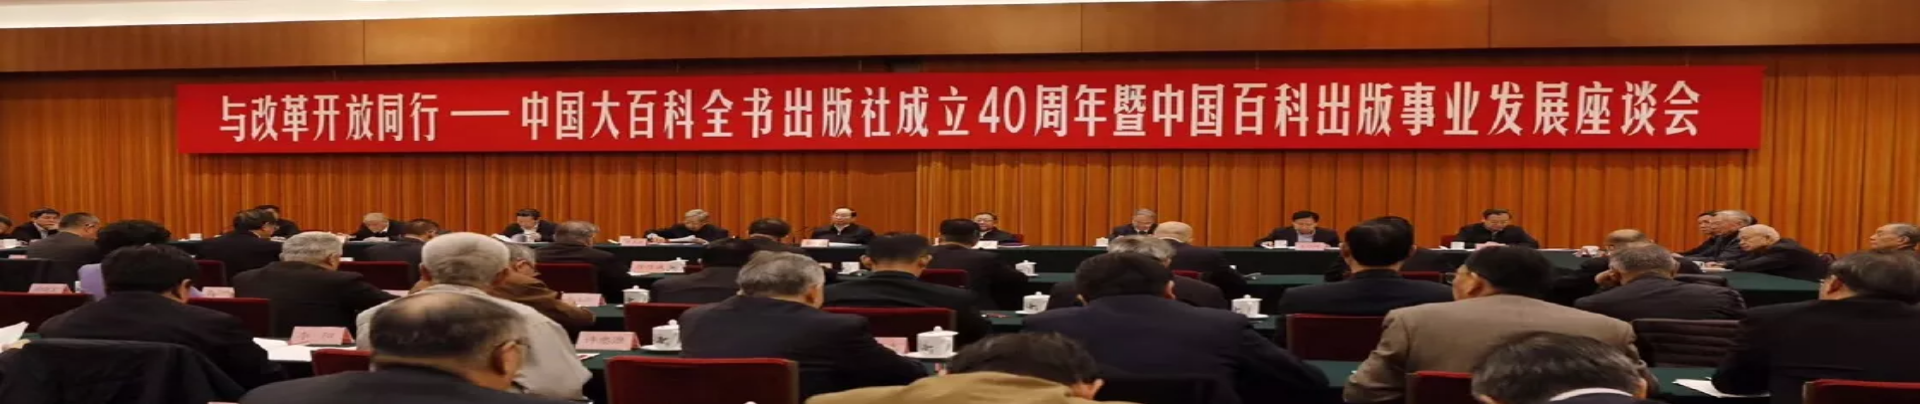 黄坤明出席中国大百科全书出版社成立40周年暨中国百科出版事业发展座谈会